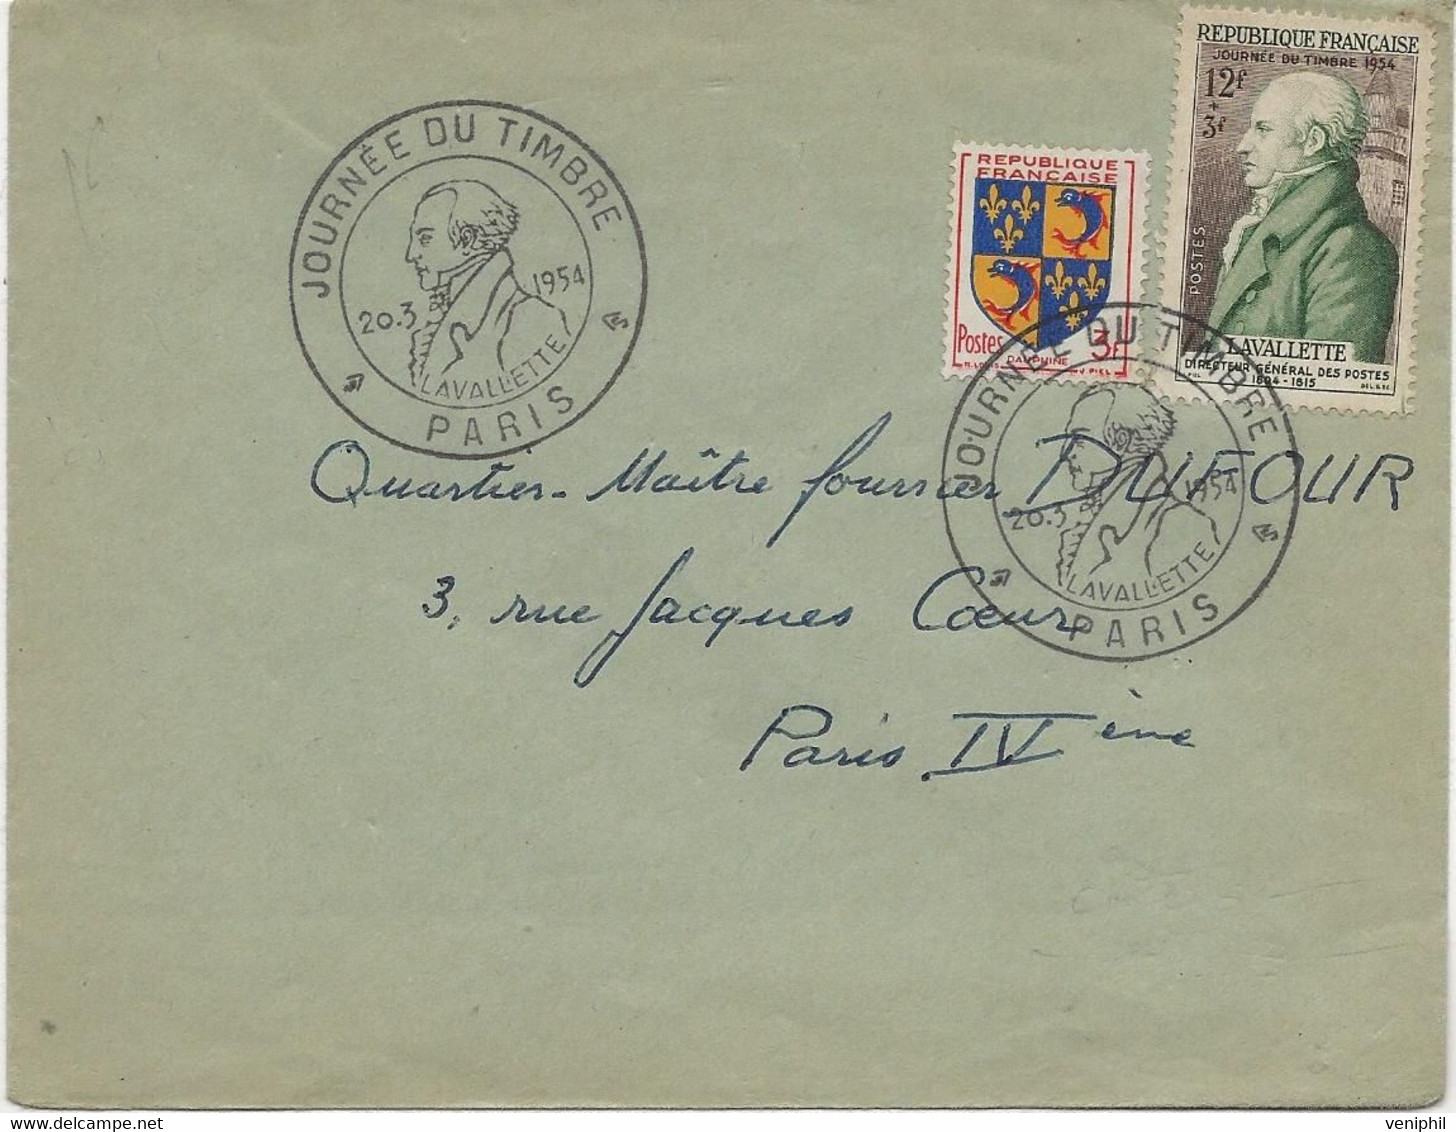 LETTRE AFFRANCHIE N° 954 + N° 969 - CACHET ILLUSTRE -JOURNEE DU TMBRE -PARIS -1954 - Matasellos Conmemorativos